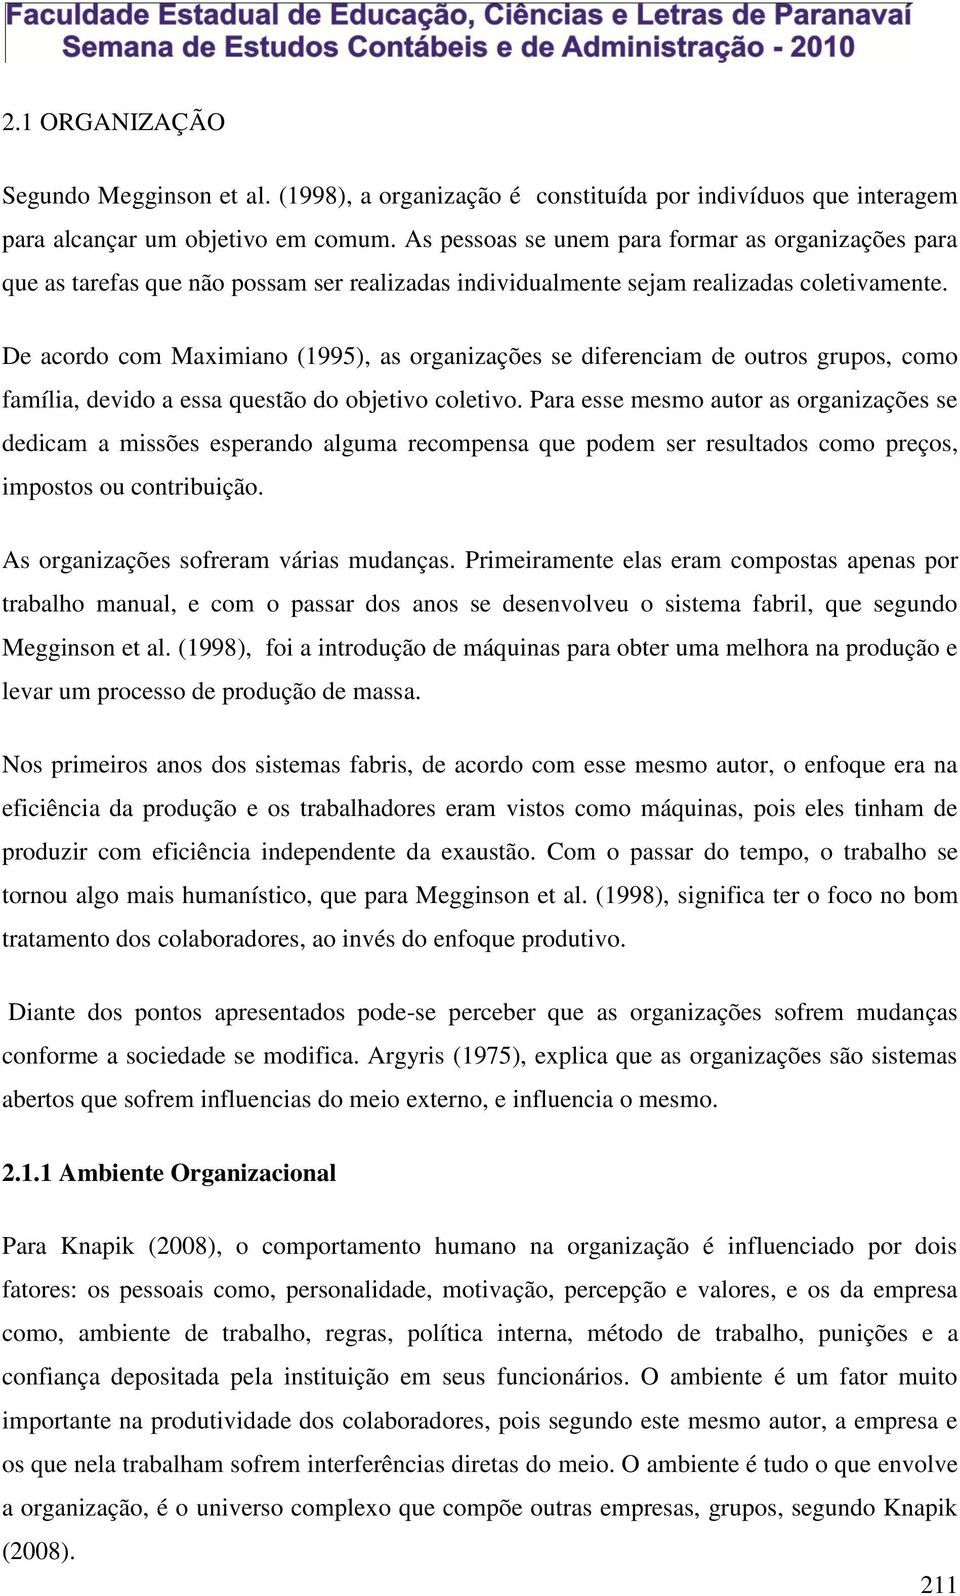 De acordo com Maximiano (1995), as organizações se diferenciam de outros grupos, como família, devido a essa questão do objetivo coletivo.